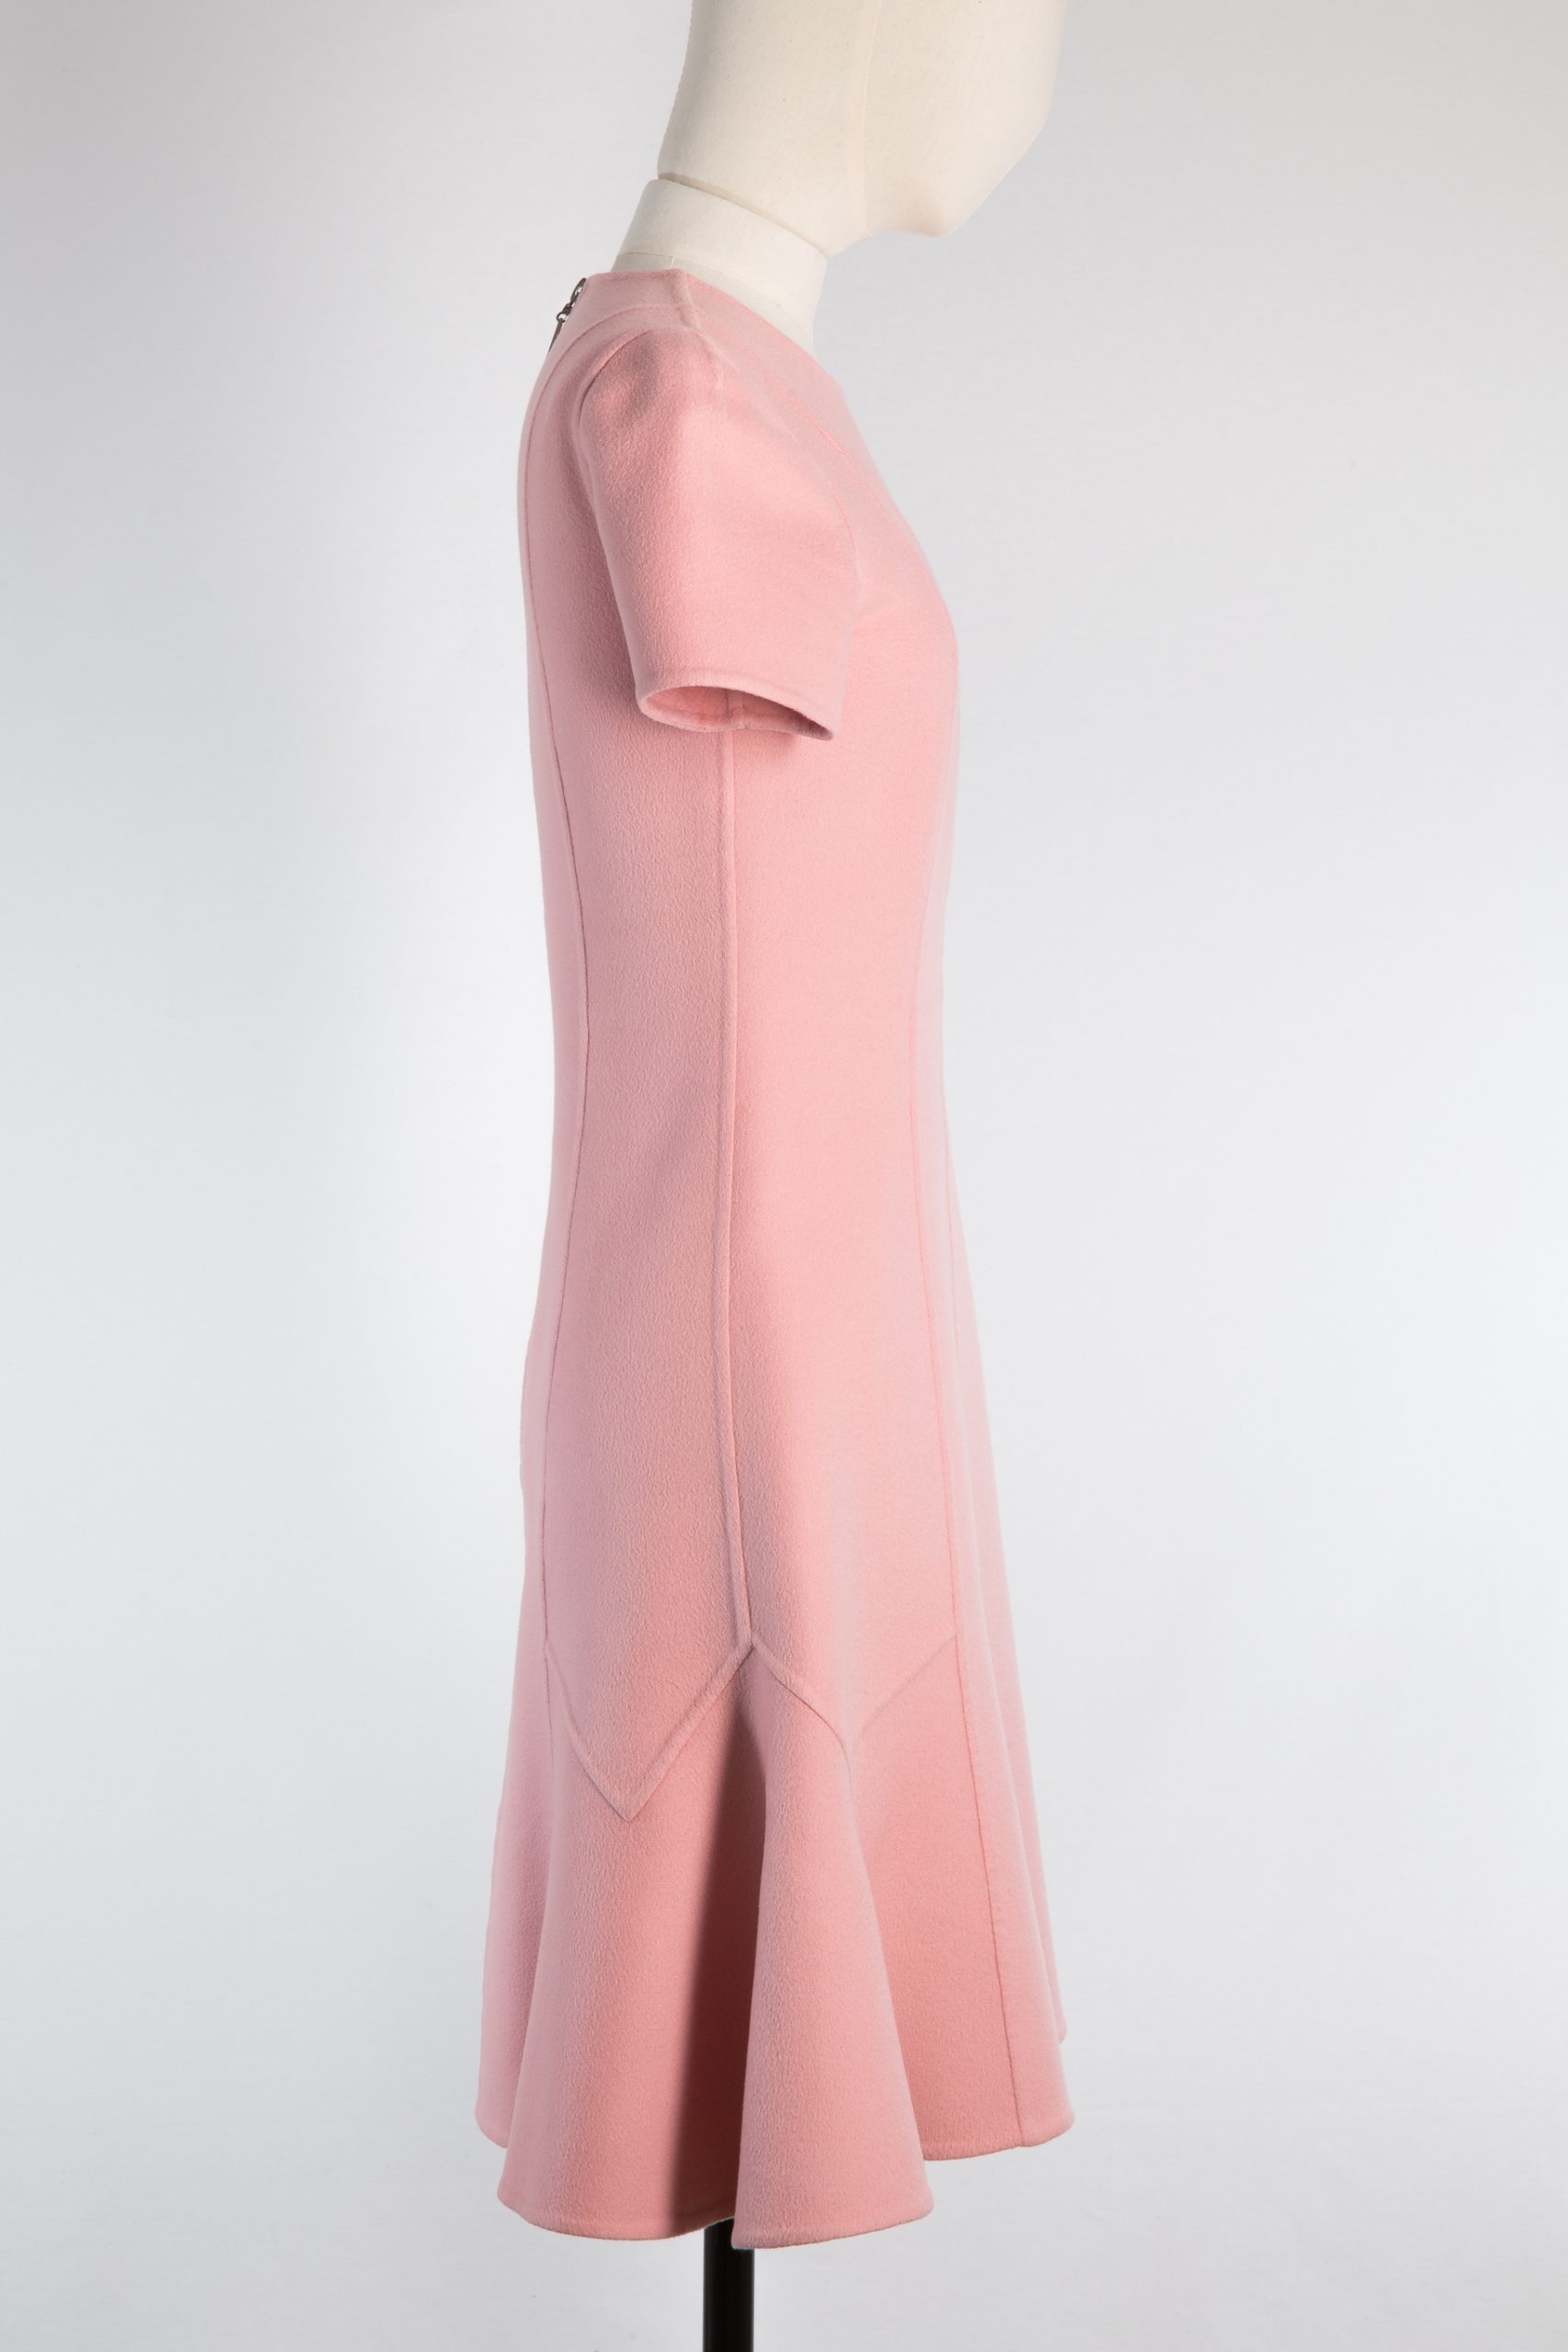 Louis Vuitton Dress, FR40 - Huntessa Luxury Online Consignment